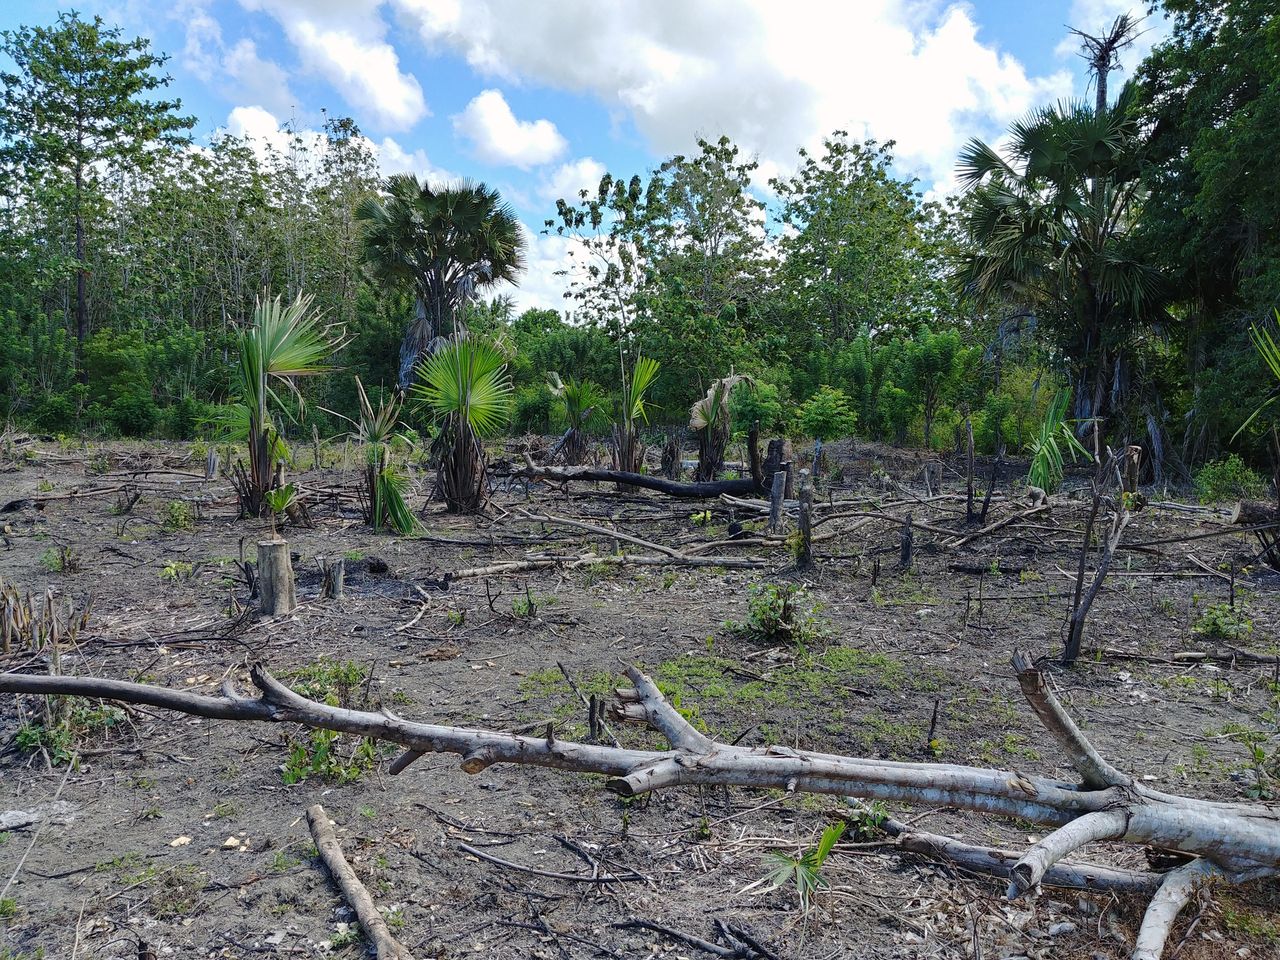 Syntetyczny olej palmowy. Czy uratuje lasy tropikalne przez zniszczeniem?